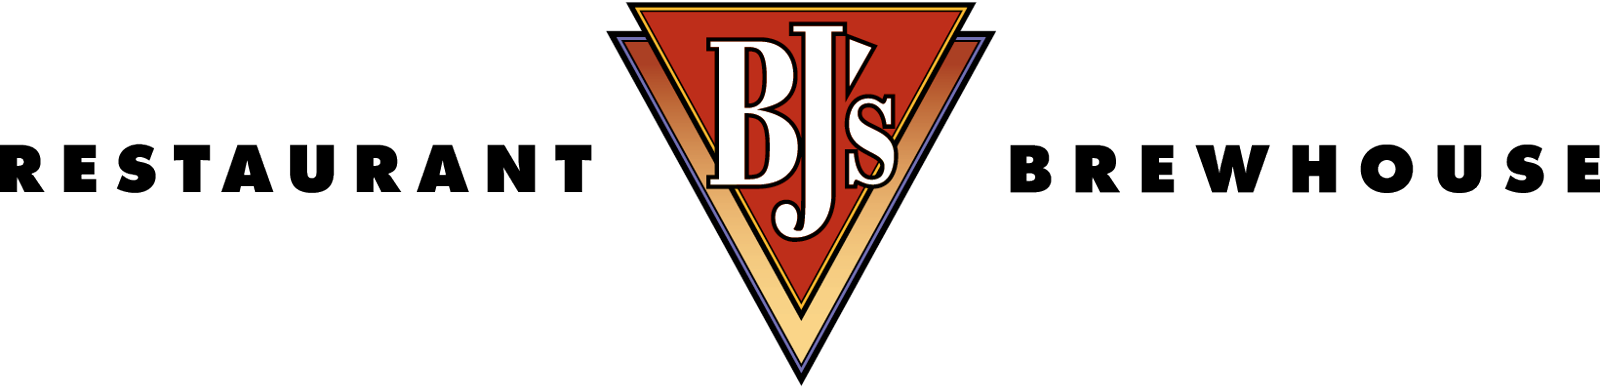 BJ’s Restaurant logo